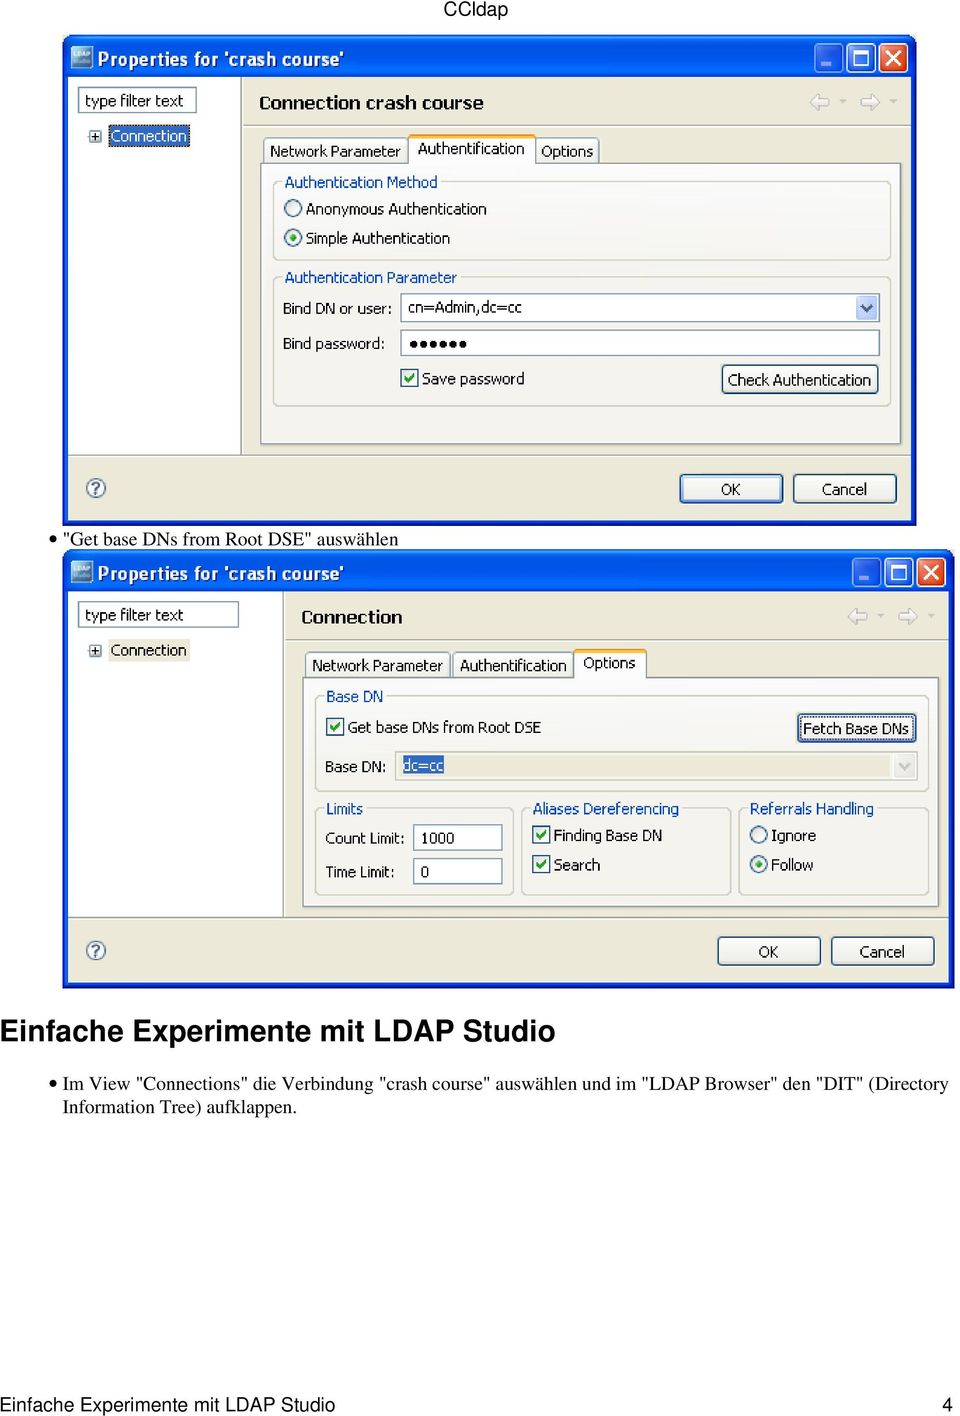 course" auswählen und im "LDAP Browser" den "DIT" (Directory